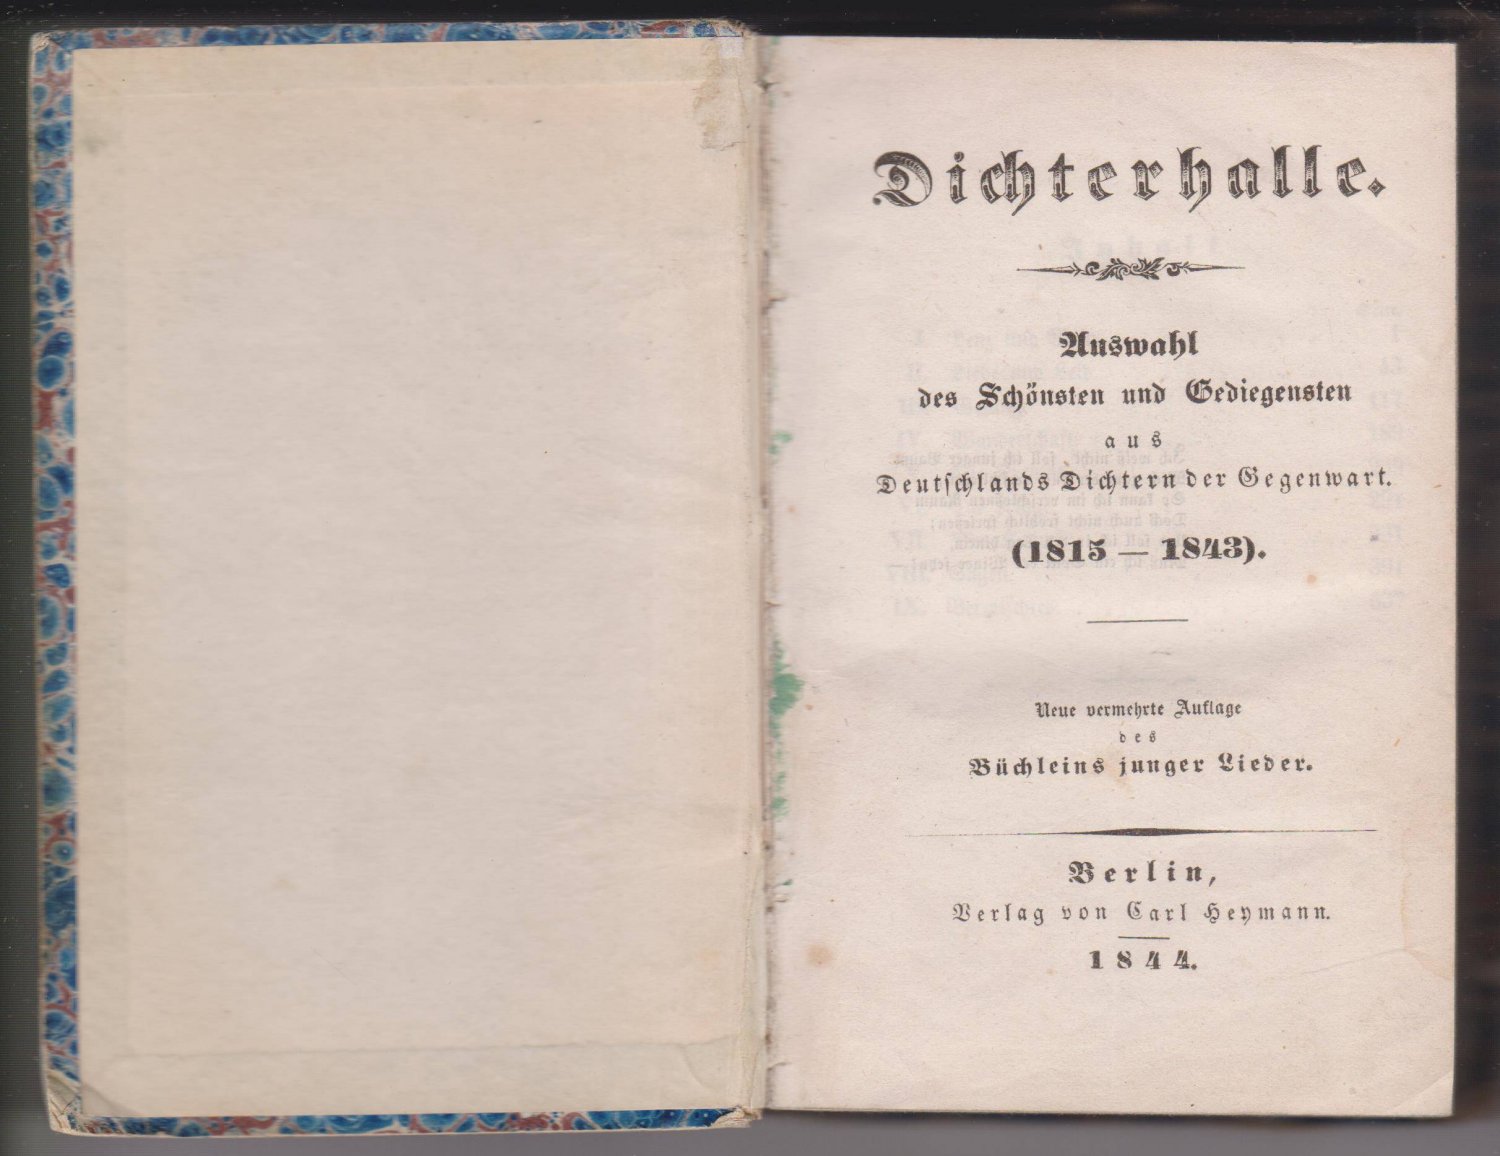   Dichterhalle. Auswahl des Schönsten und Gediegensten aus Deutschlands Dichtern der Gegenwart (1815-1843). 